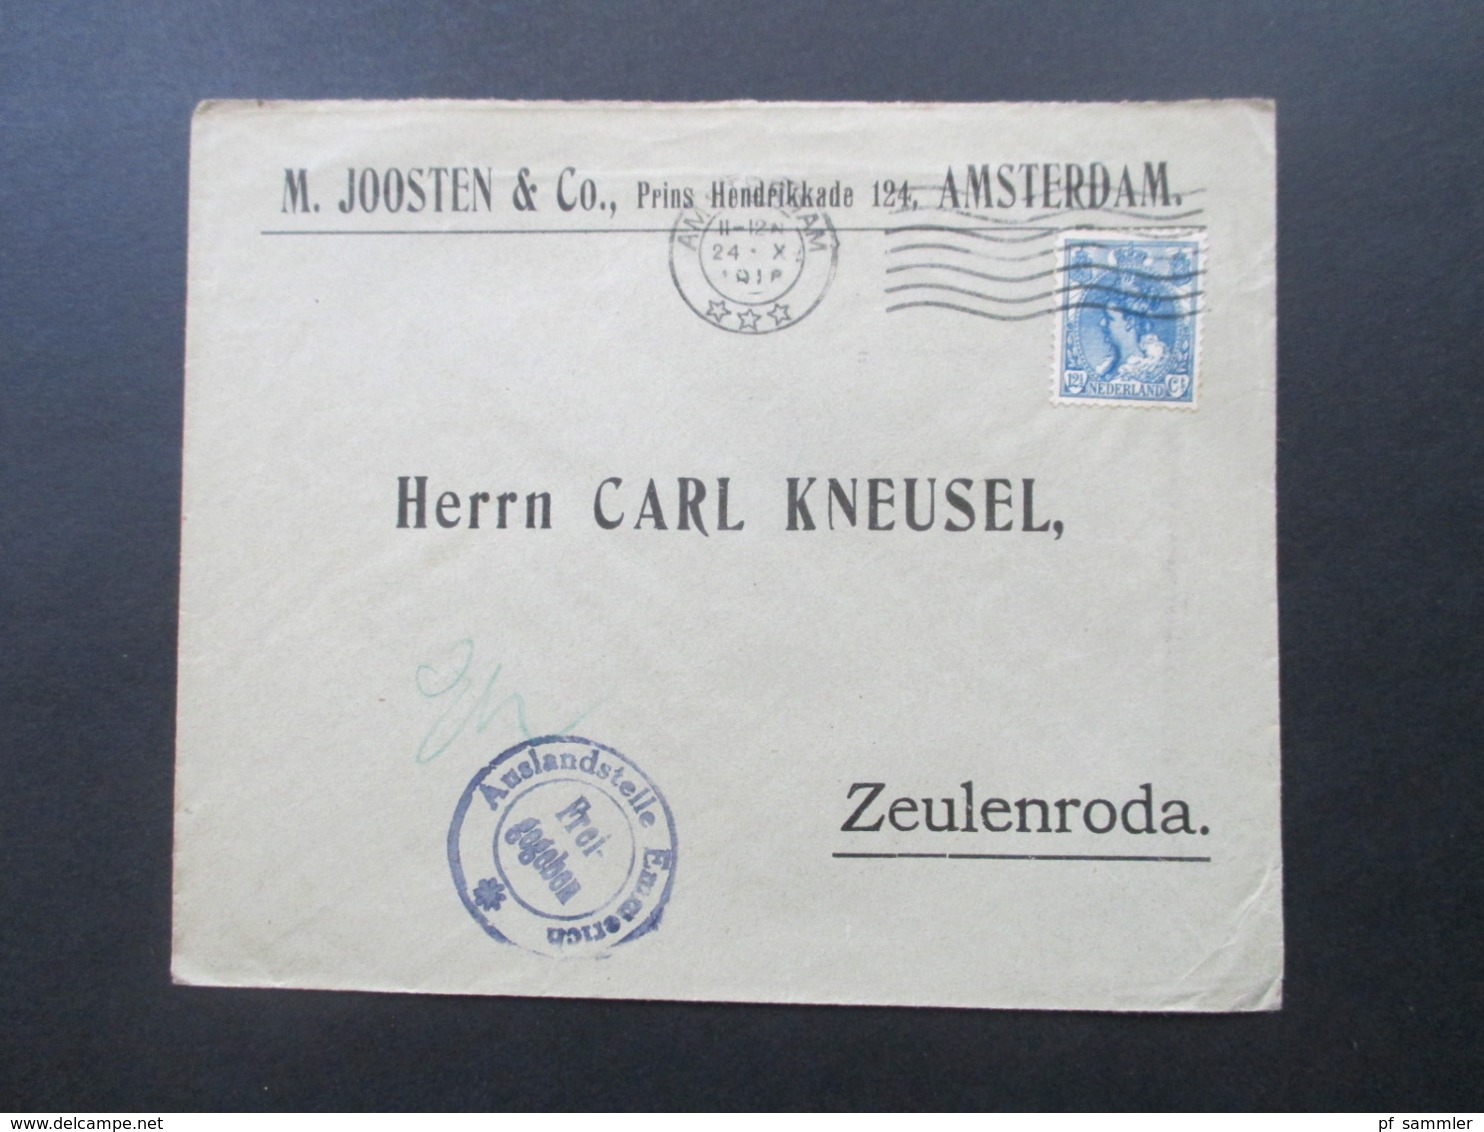 1916 10 Auslandsbelege M. Joosten Amsterdam - Zeulenroda alle mit Zensurstempel Auslandsstelle Emmerich Freigegeben